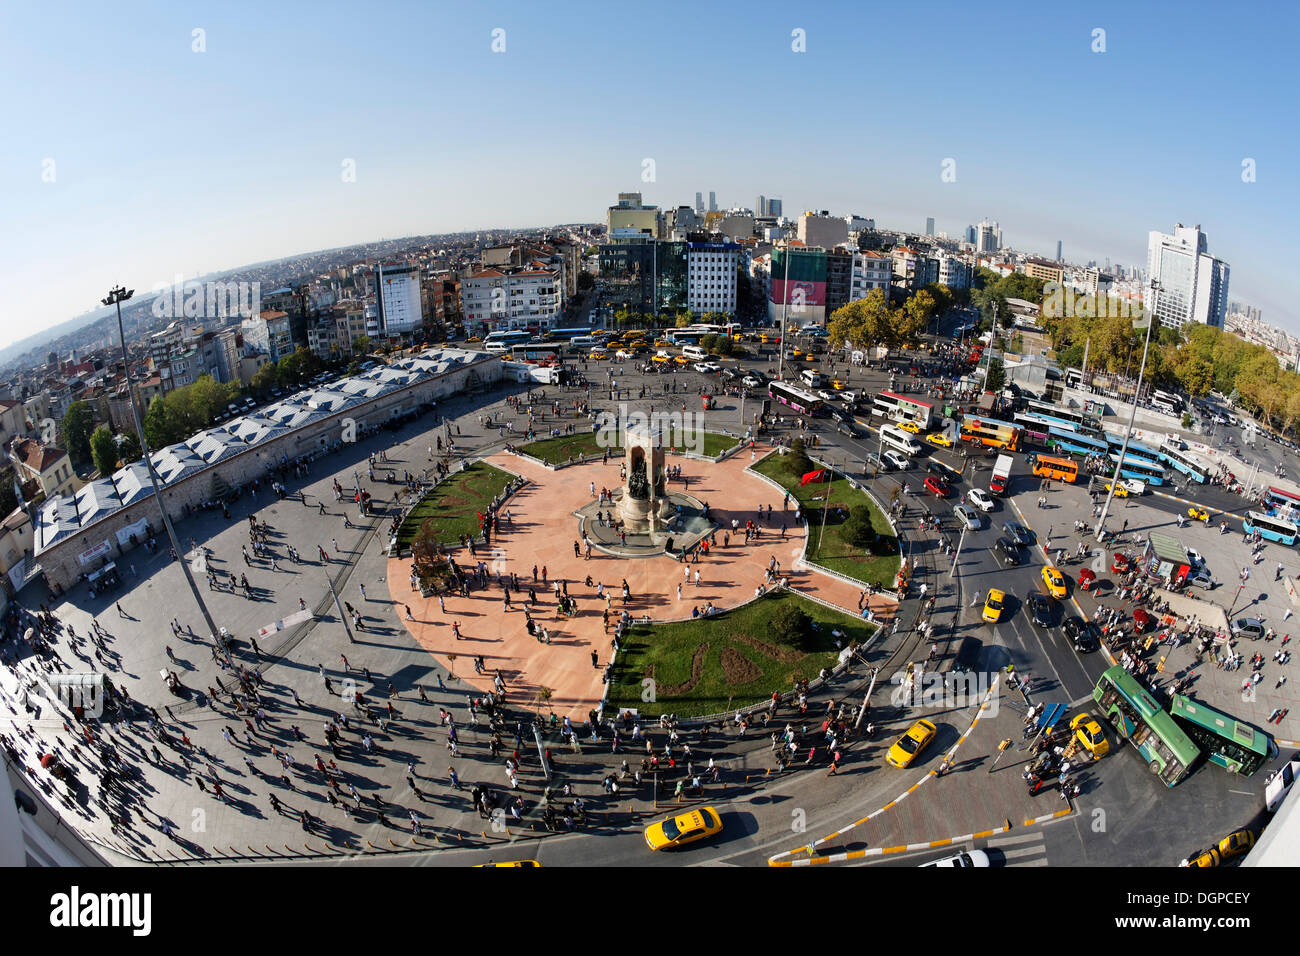 La Place Taksim, Taksim Meydani, Istanbul, côté européen, la Turquie, l'Europe Banque D'Images